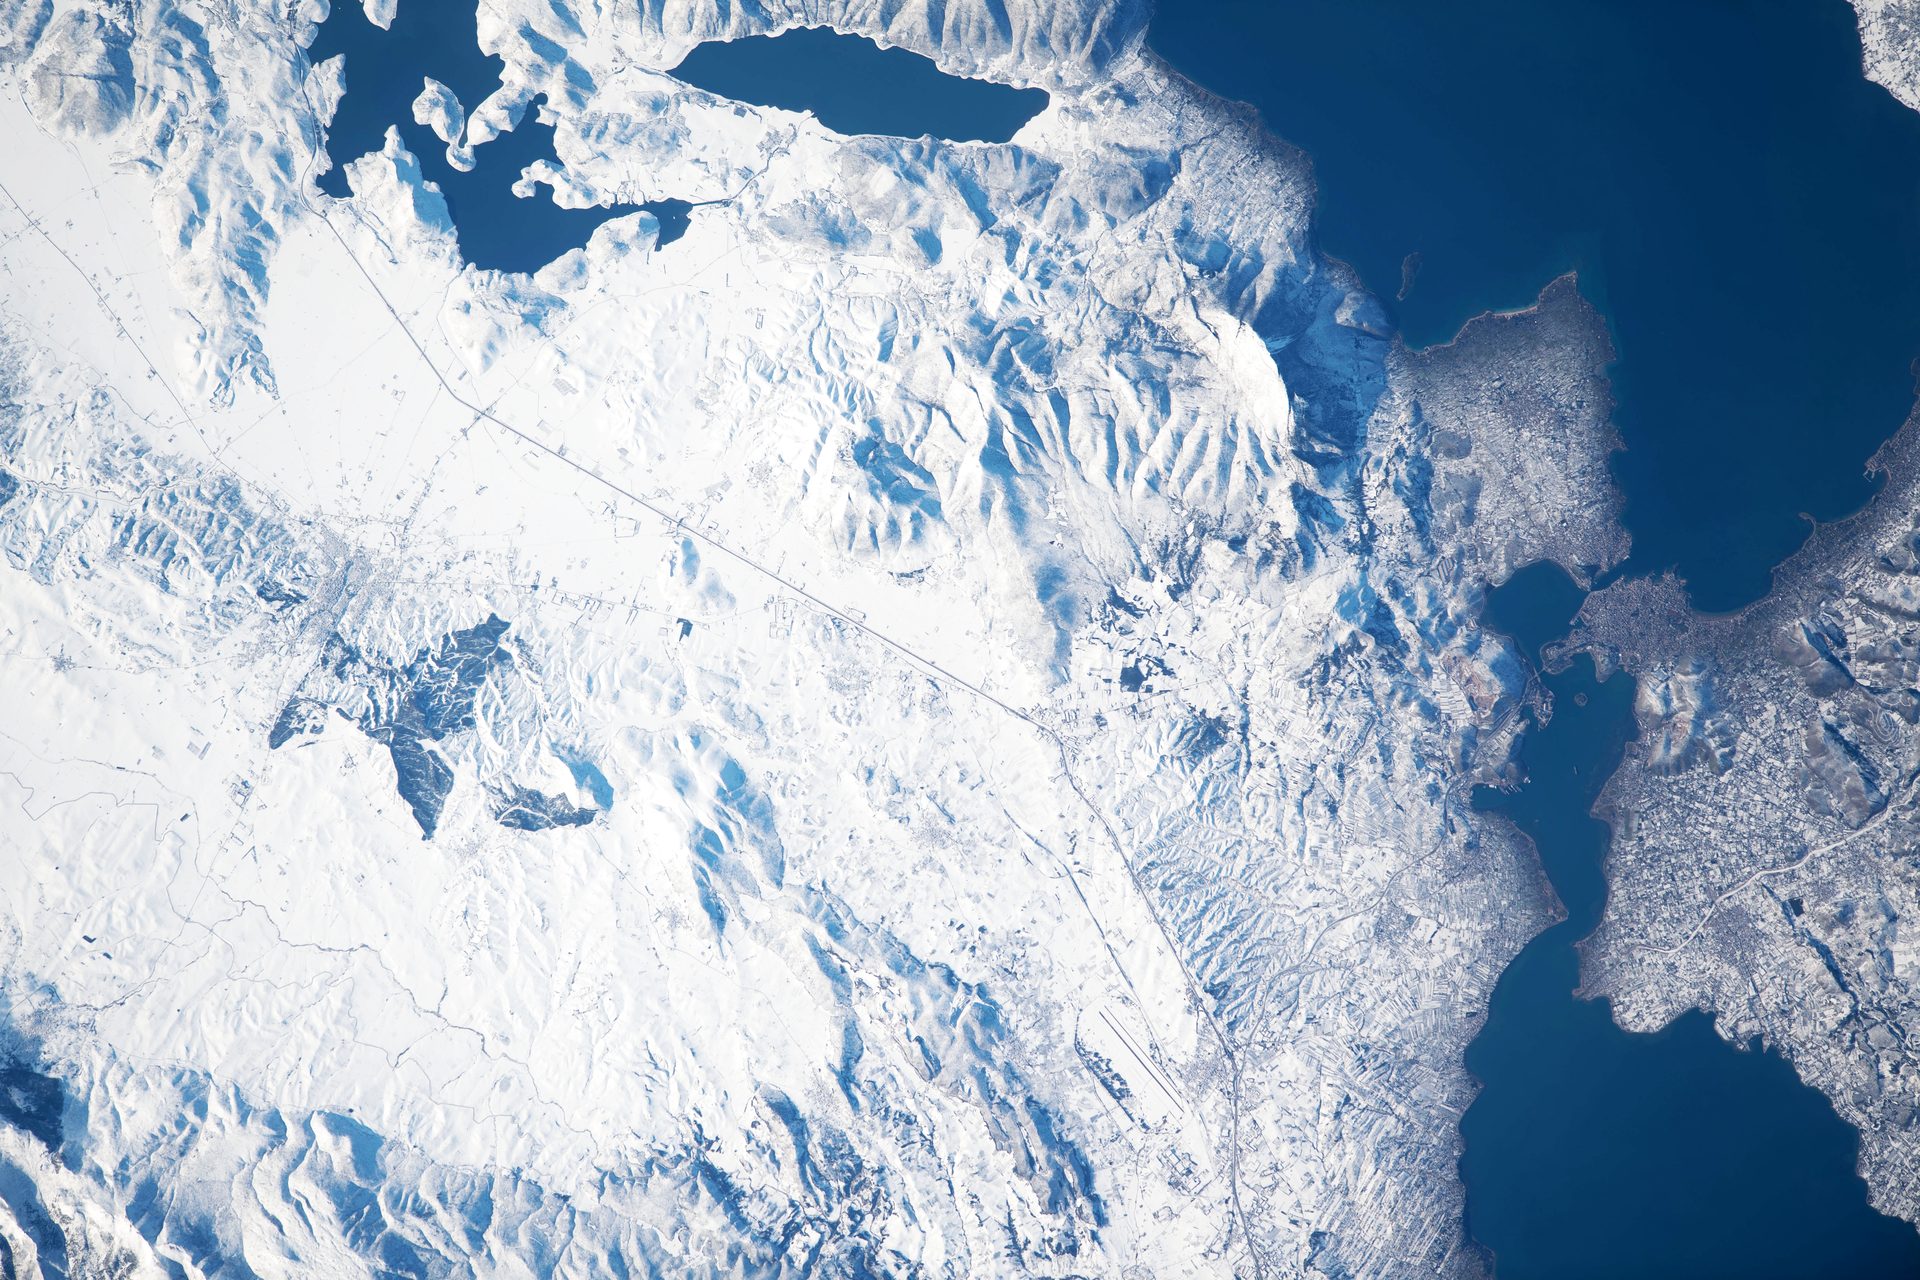 Χιονισμένη Ελλάδα φωτογραφημένη απο το διάστημα (Χαλκίδα, πορθμός του Ευρίπου και μέρος του Ευβοϊκού Κόλπου)